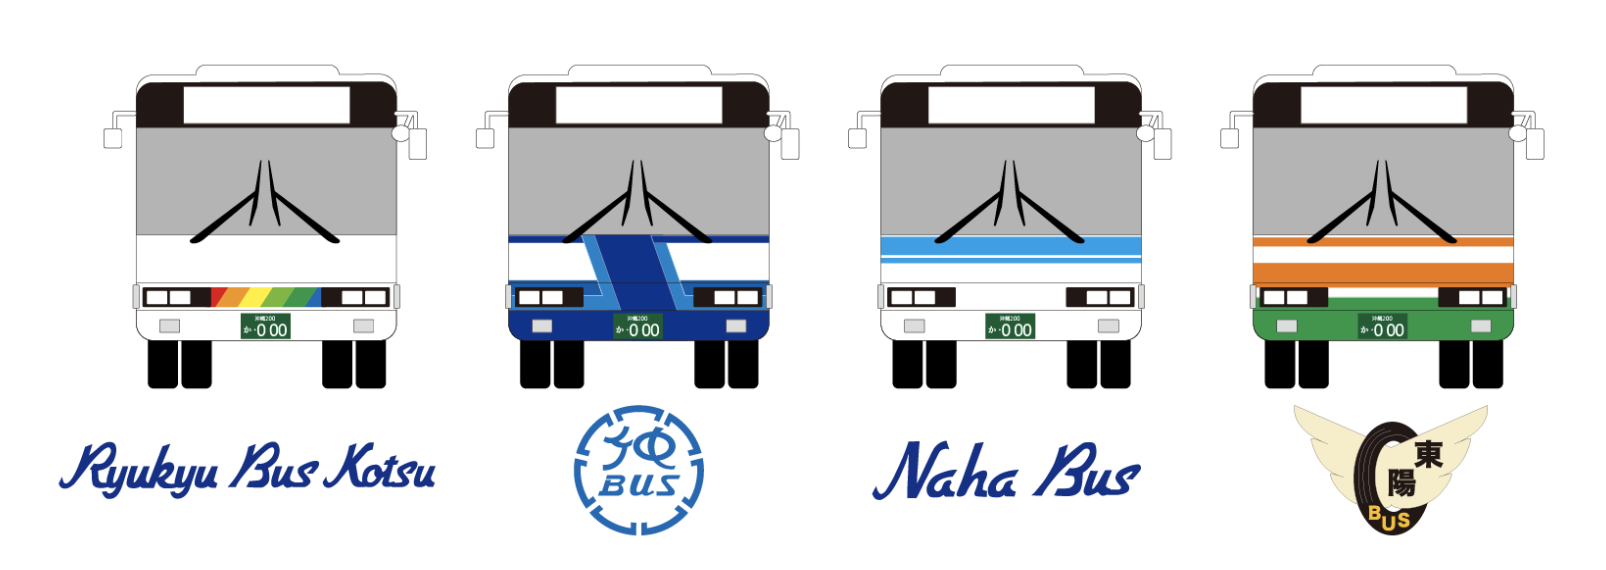 沖繩路線巴士